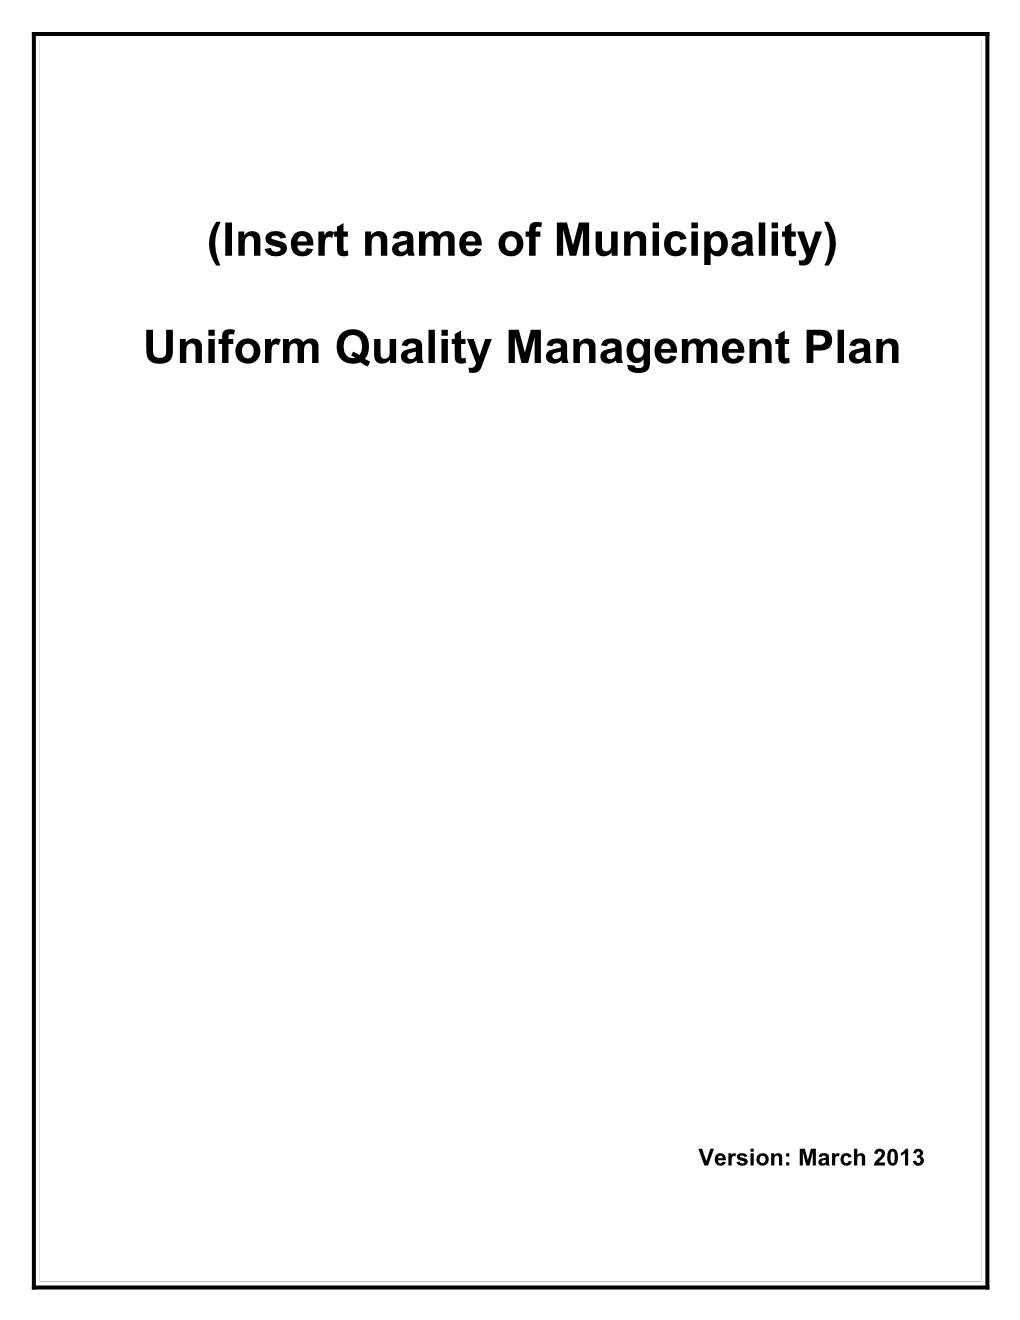 Uniform Quality Management Plan